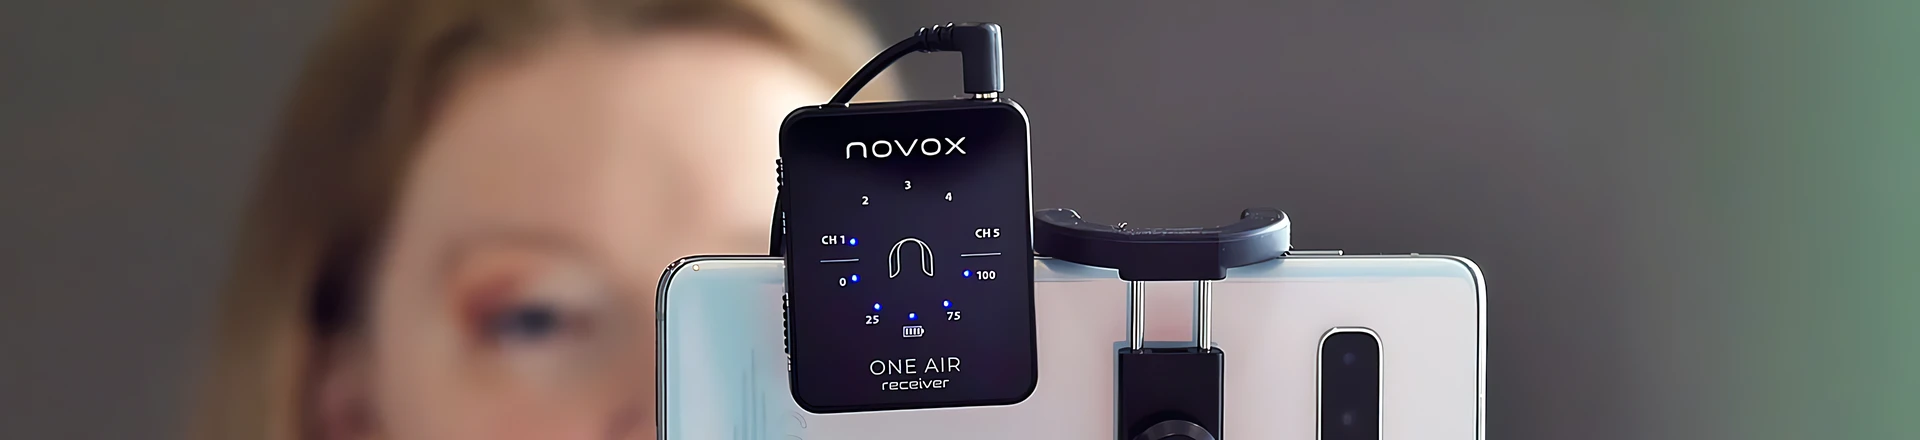 ONE AIR - Bezprzewodowy system do nagrywania dźwięku od Novox